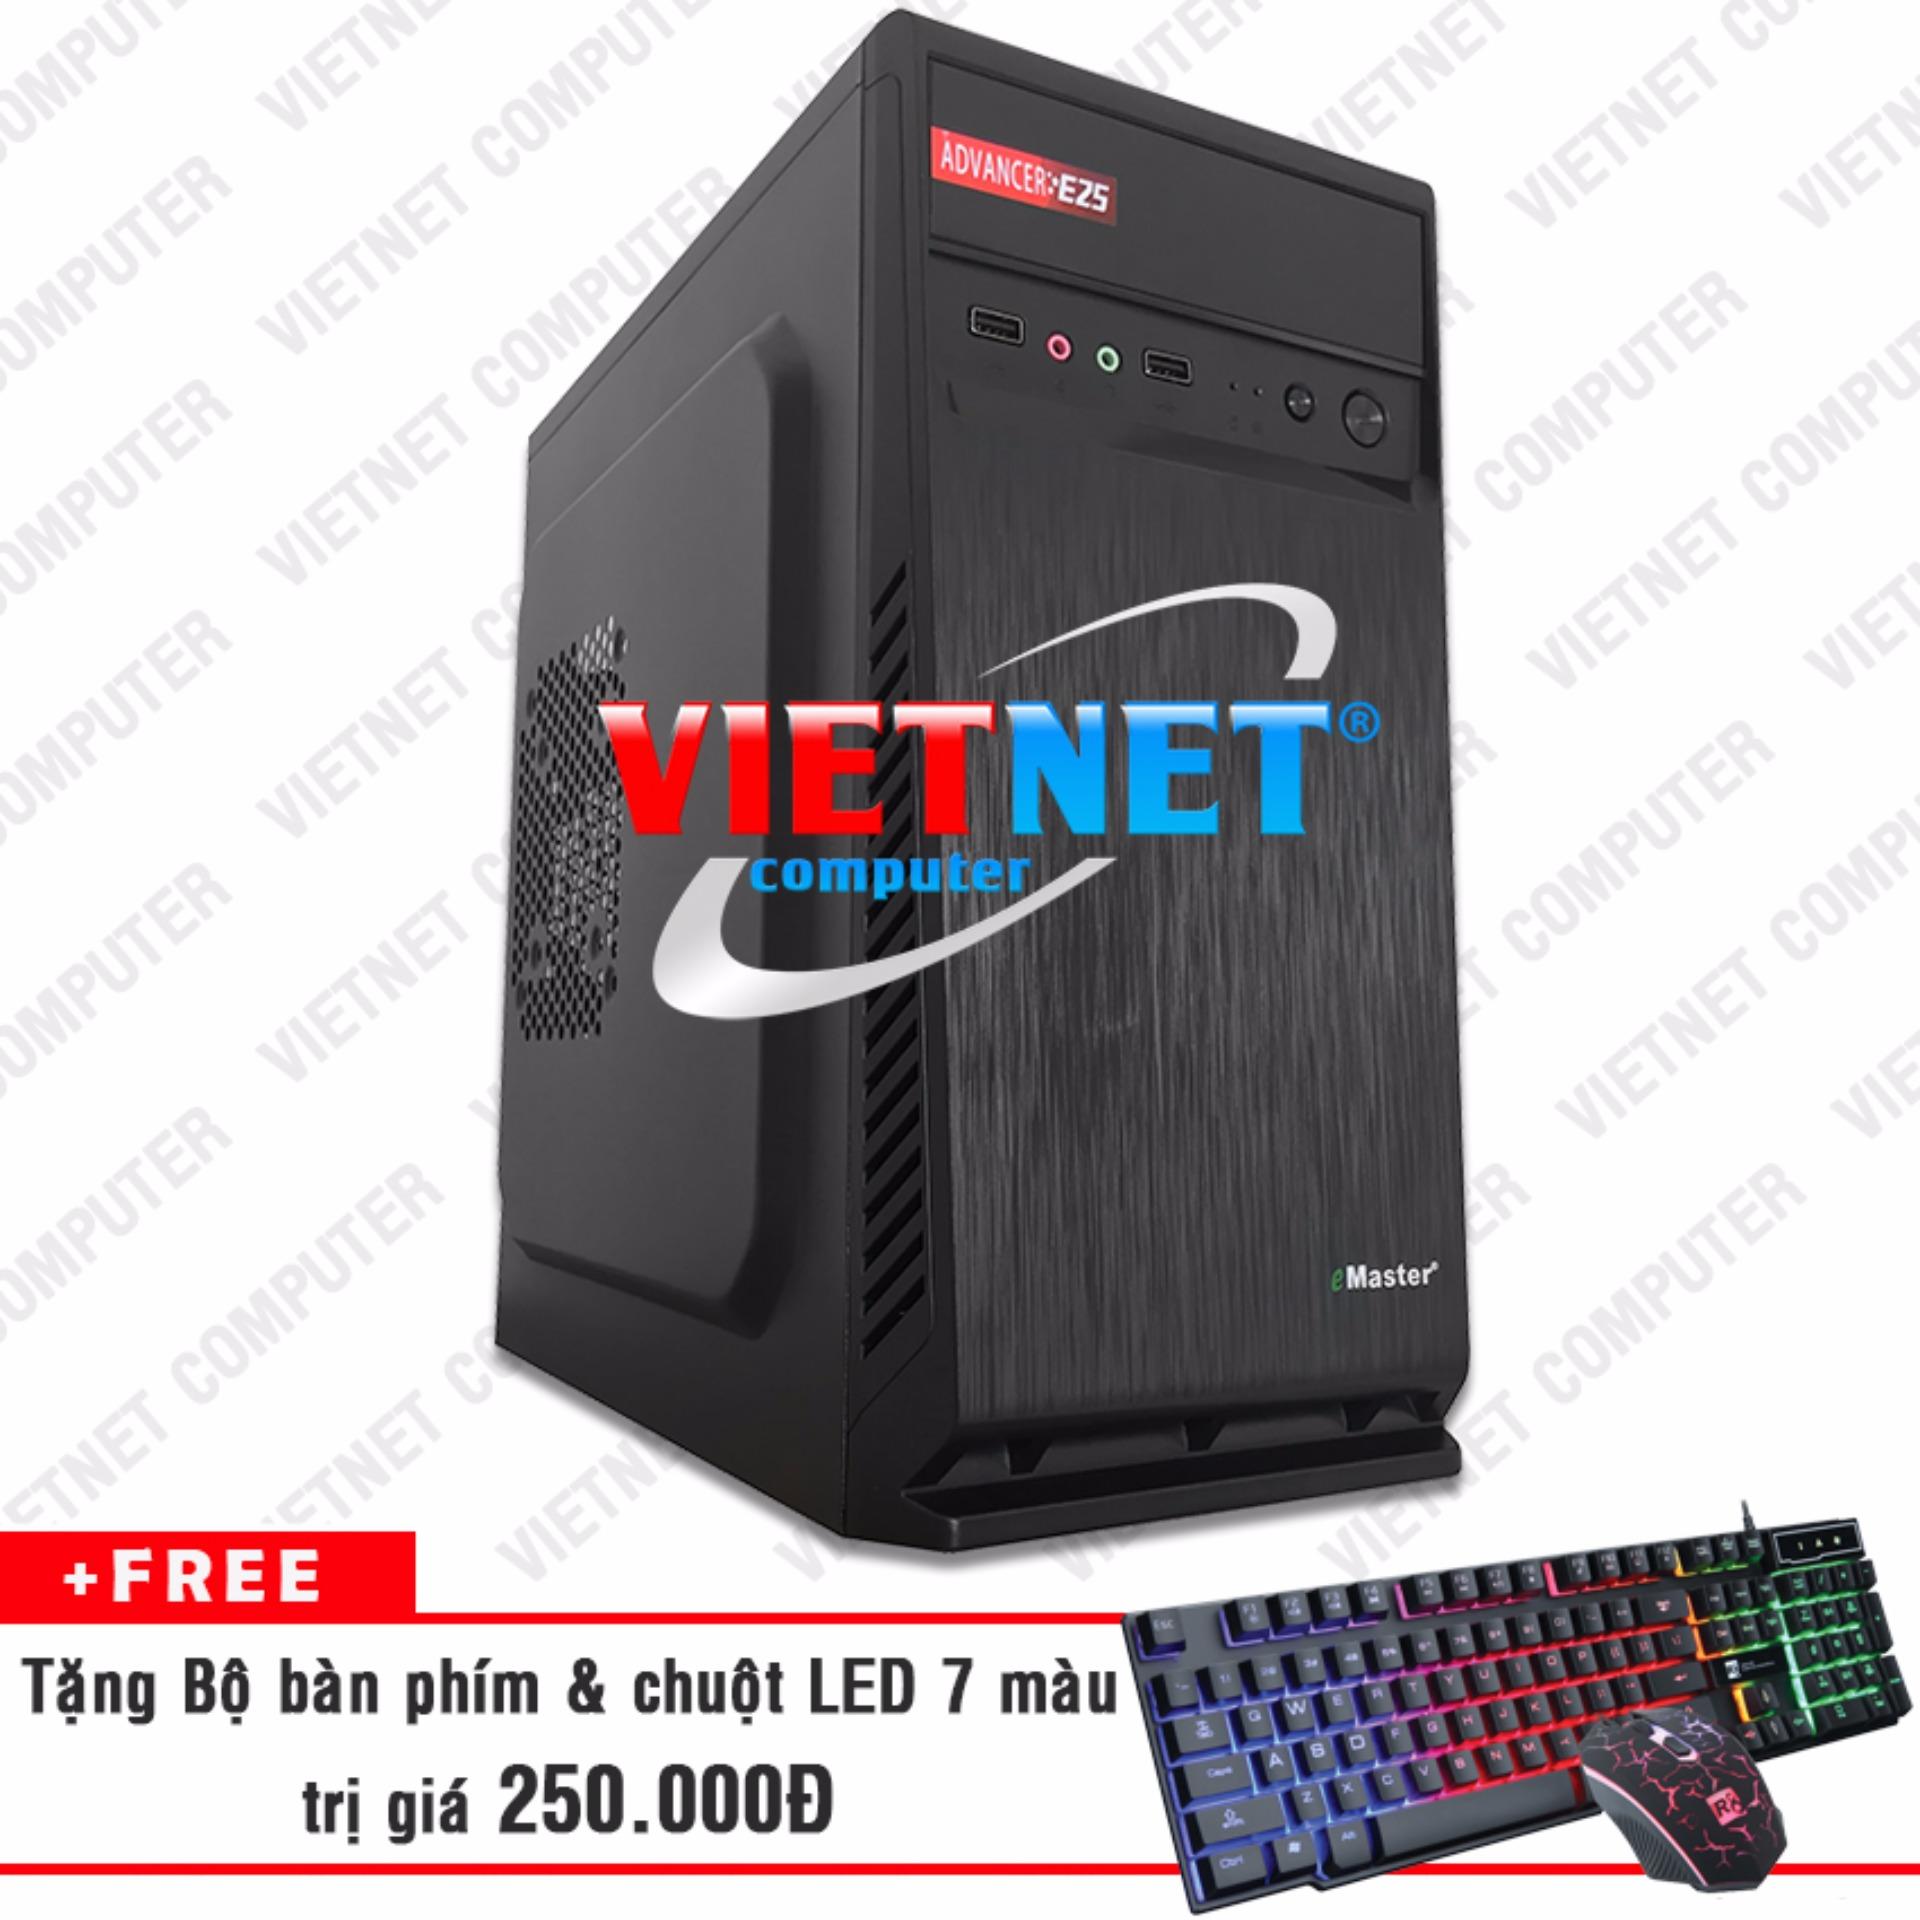 Máy tính để bàn intel core 2Duo E8400 RAM 2GB 160GB VietNet